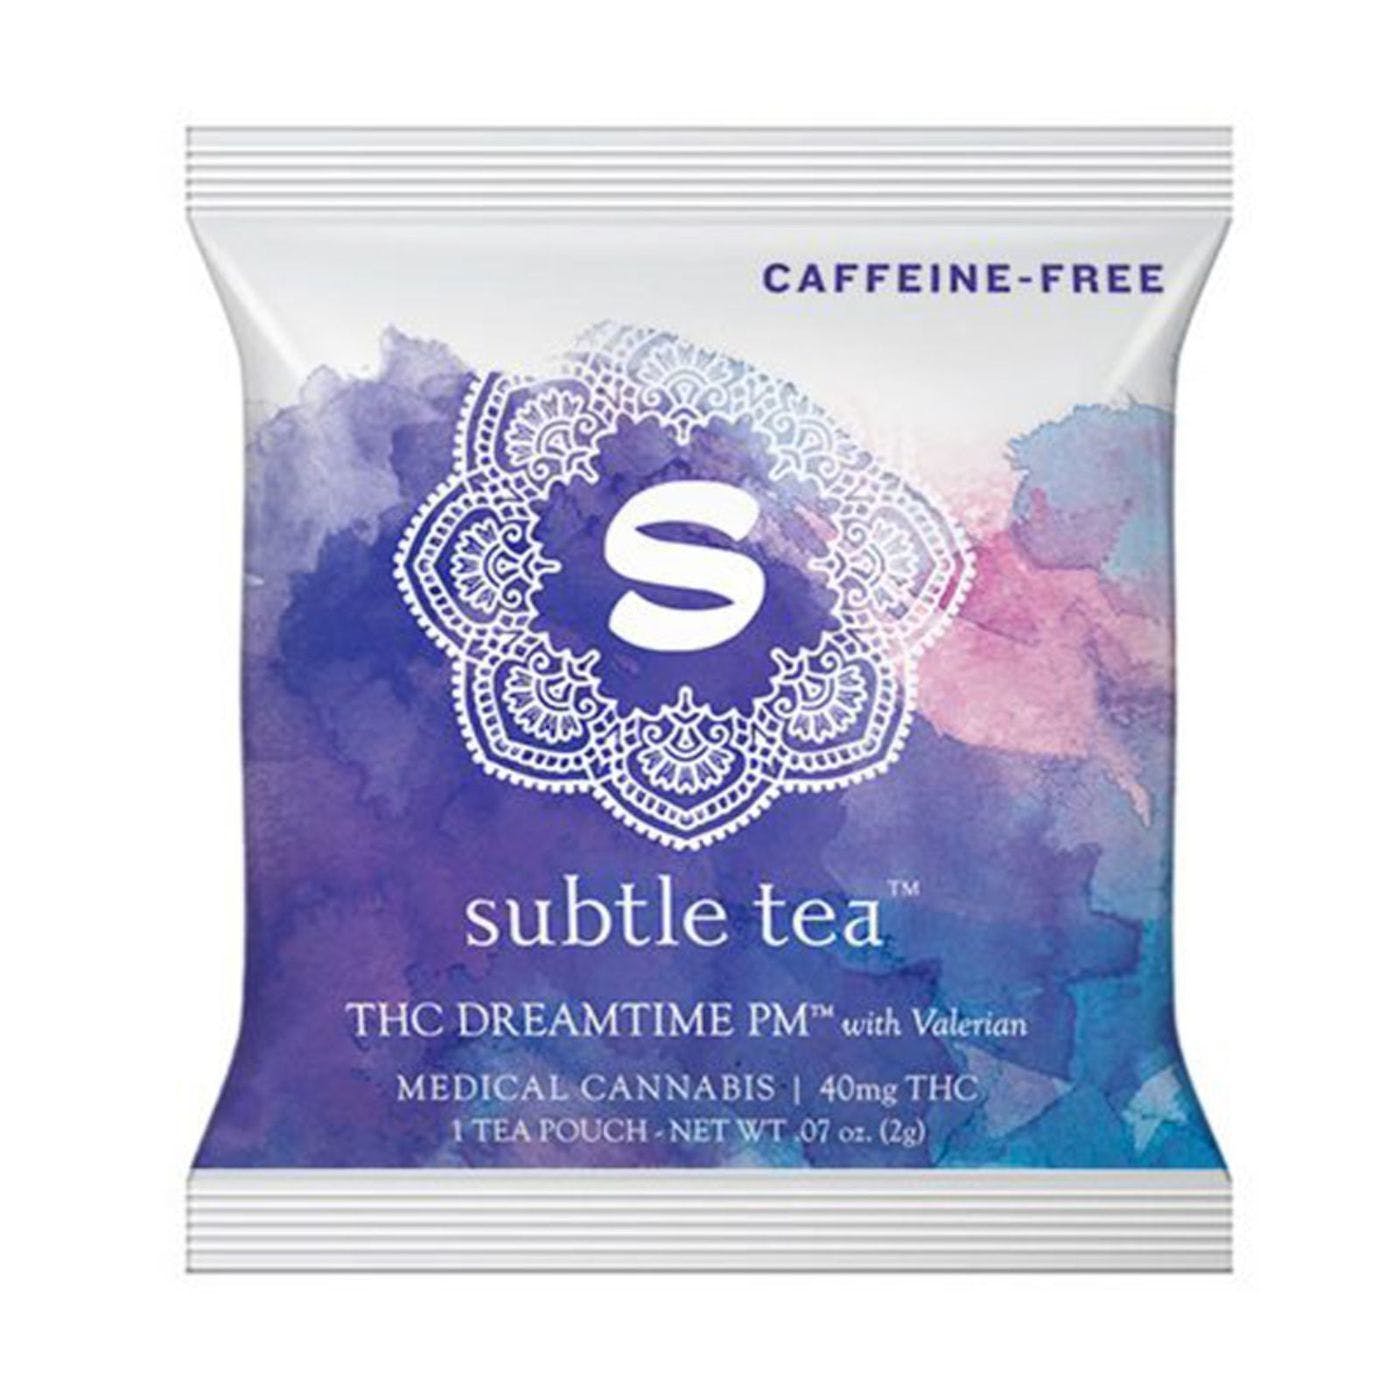 Subtle Tea THC Dreamtime PM 40mg